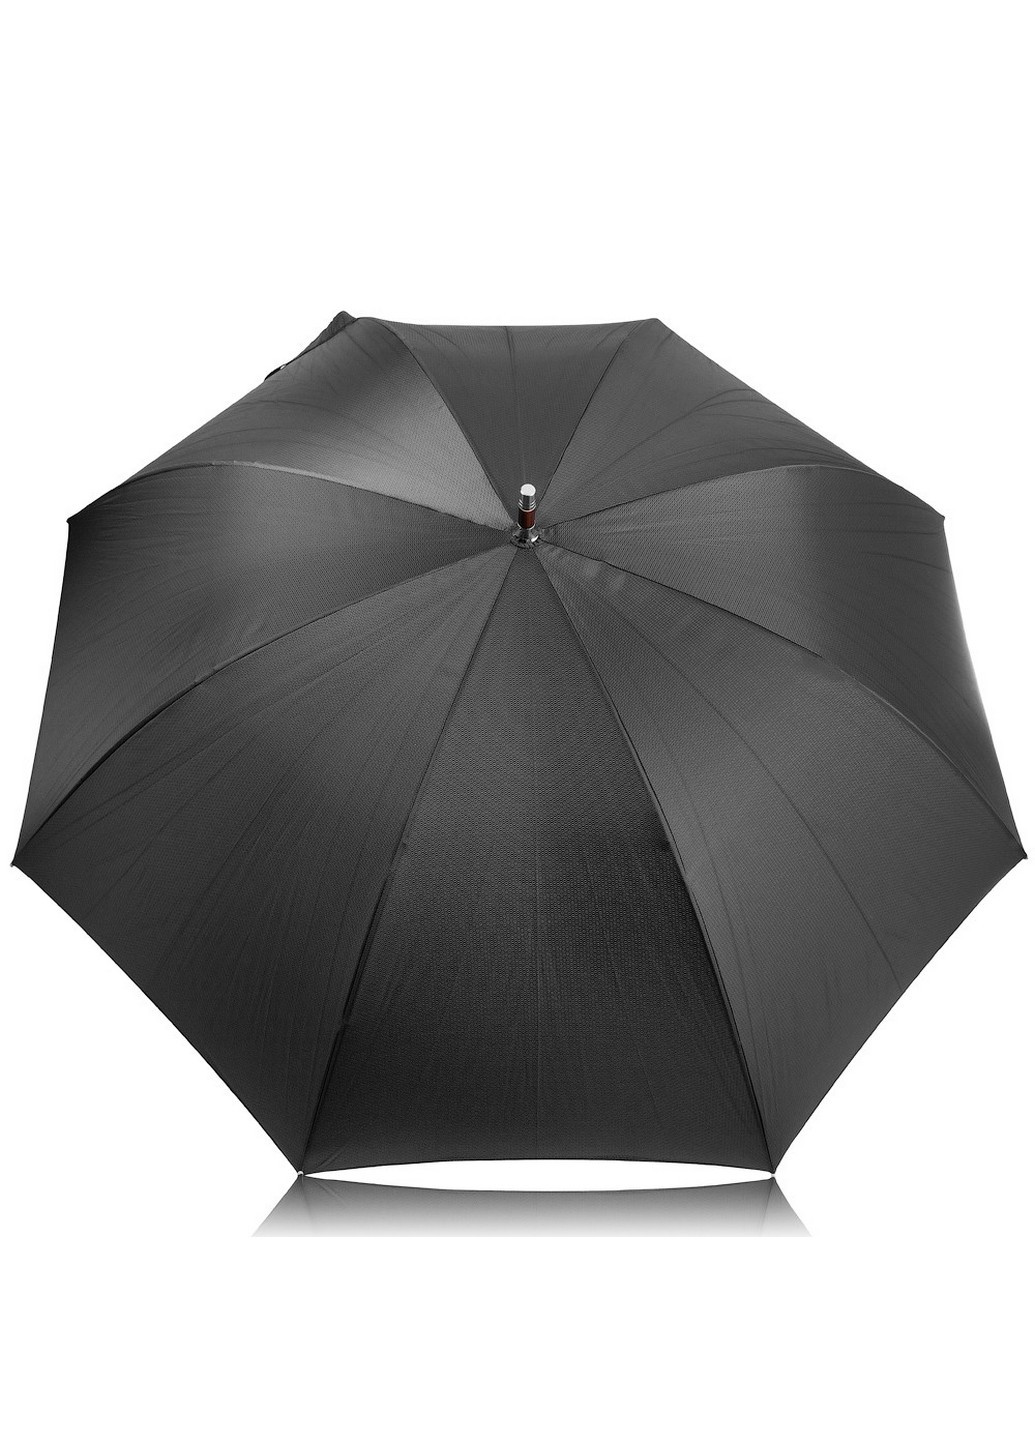 Зонт-трость мужской механический с большим куполом 115 см FARE (256900296)